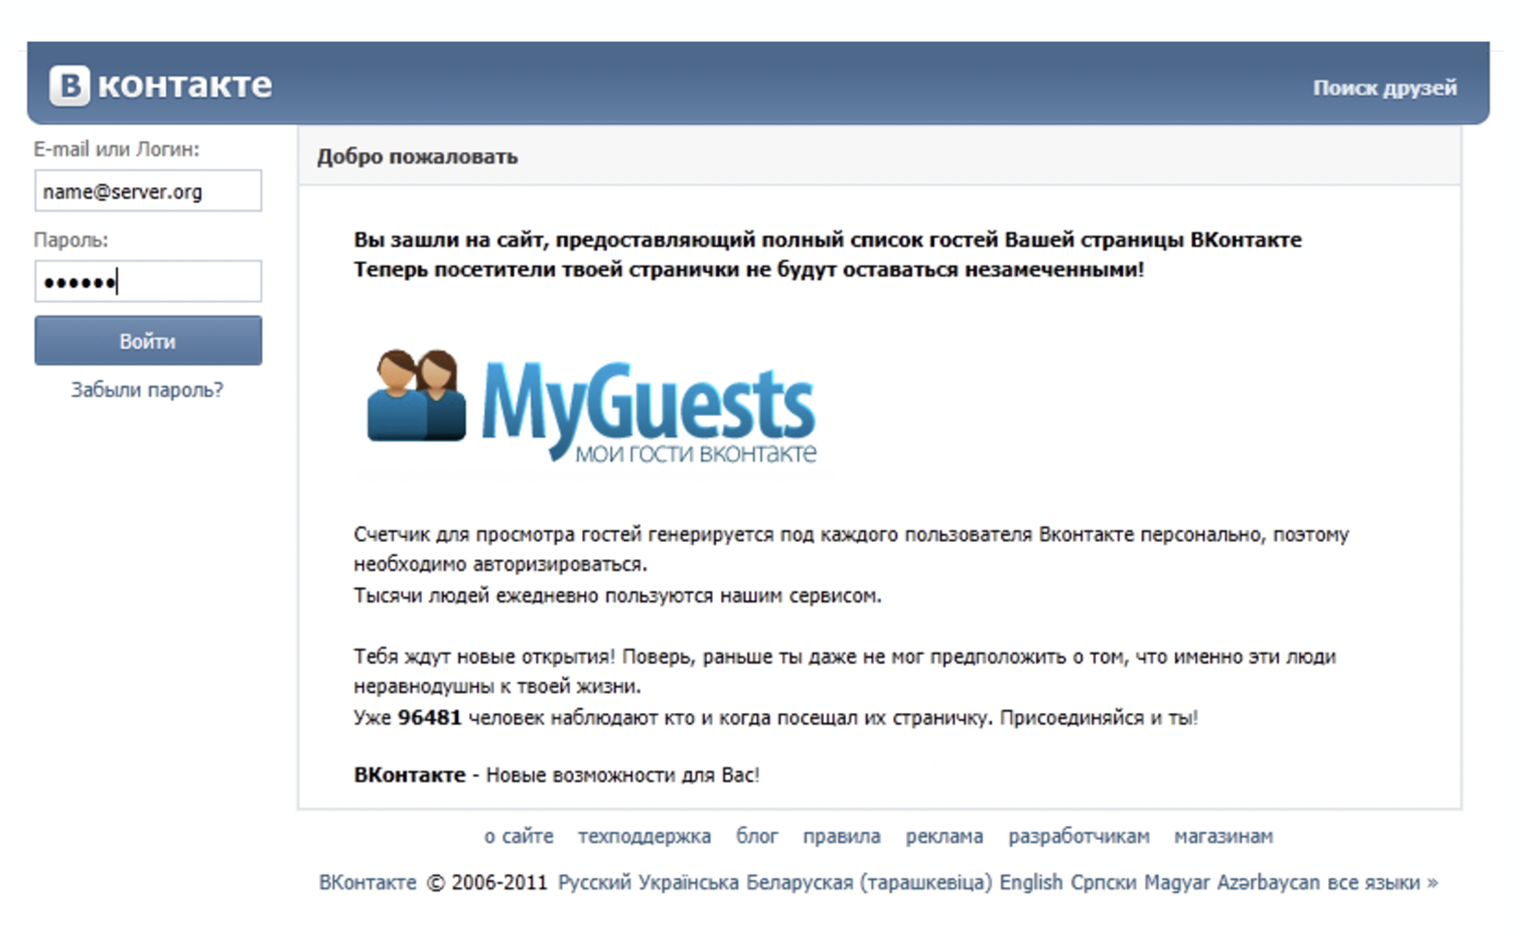 Популярная схема фишинга в Рунете нулевых: пользователям соцсети предлагали оставить логин и пароль на сайте, который обещал показывать имена всех, кто посетил их страничку. Источник: drweb.ru